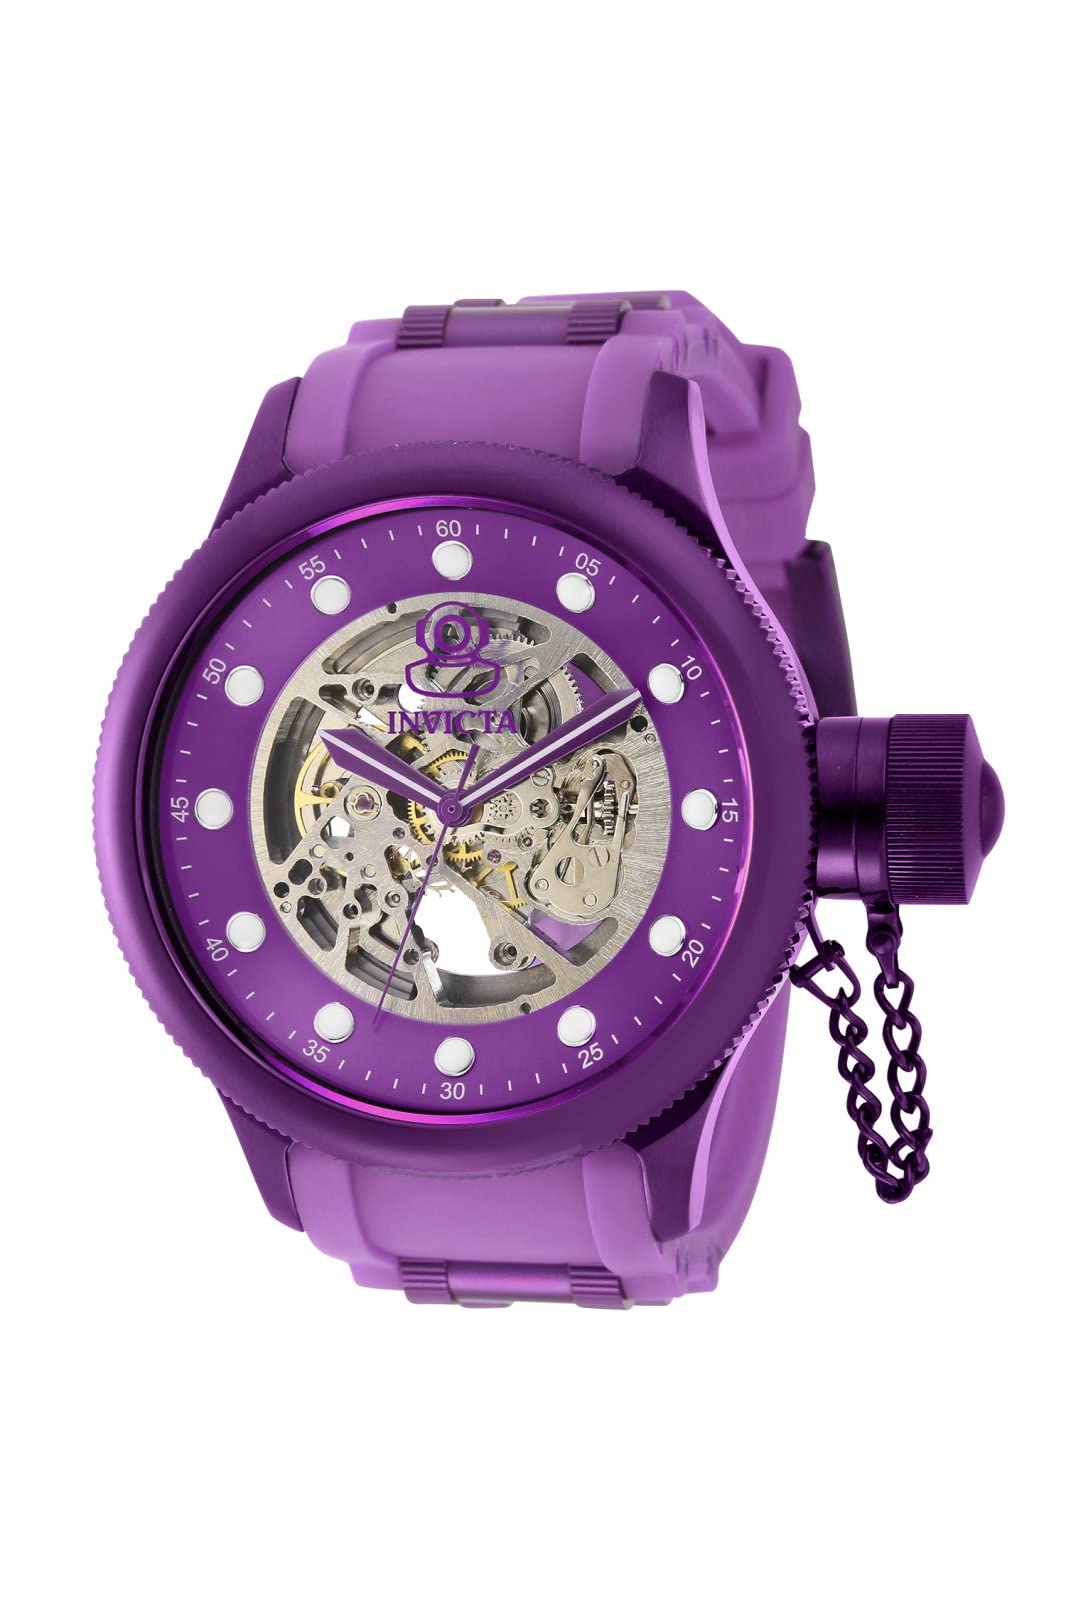 Invicta Men's Pro Diver 40744 Automatic Watch